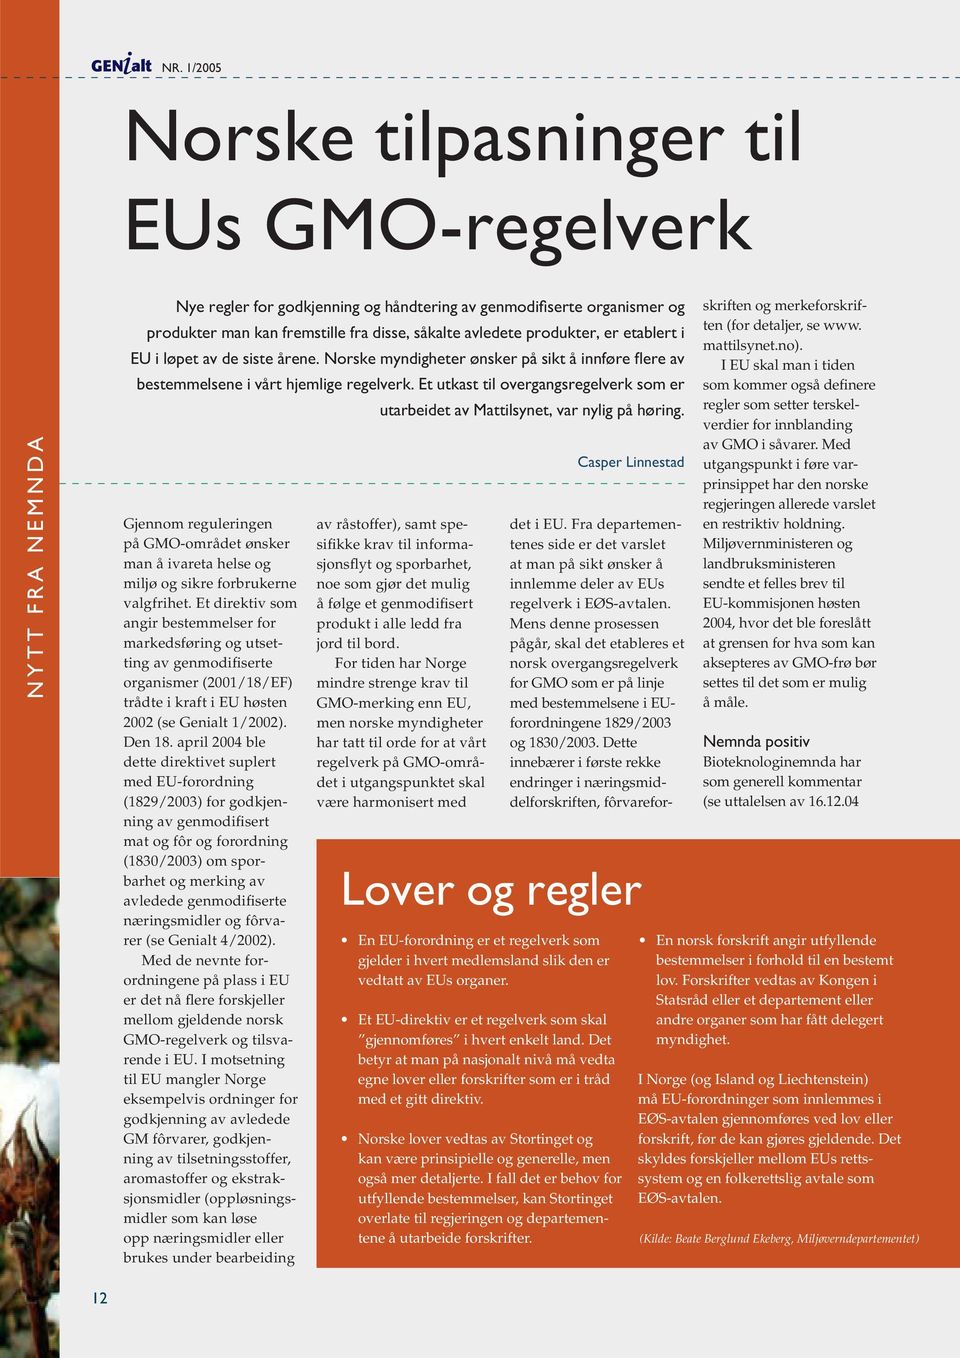 Et utkast til overgangsregelverk som er utarbeidet av Mattilsynet, var nylig på høring. Gjennom reguleringen på GMO-området ønsker man å ivareta helse og miljø og sikre forbrukerne valgfrihet.